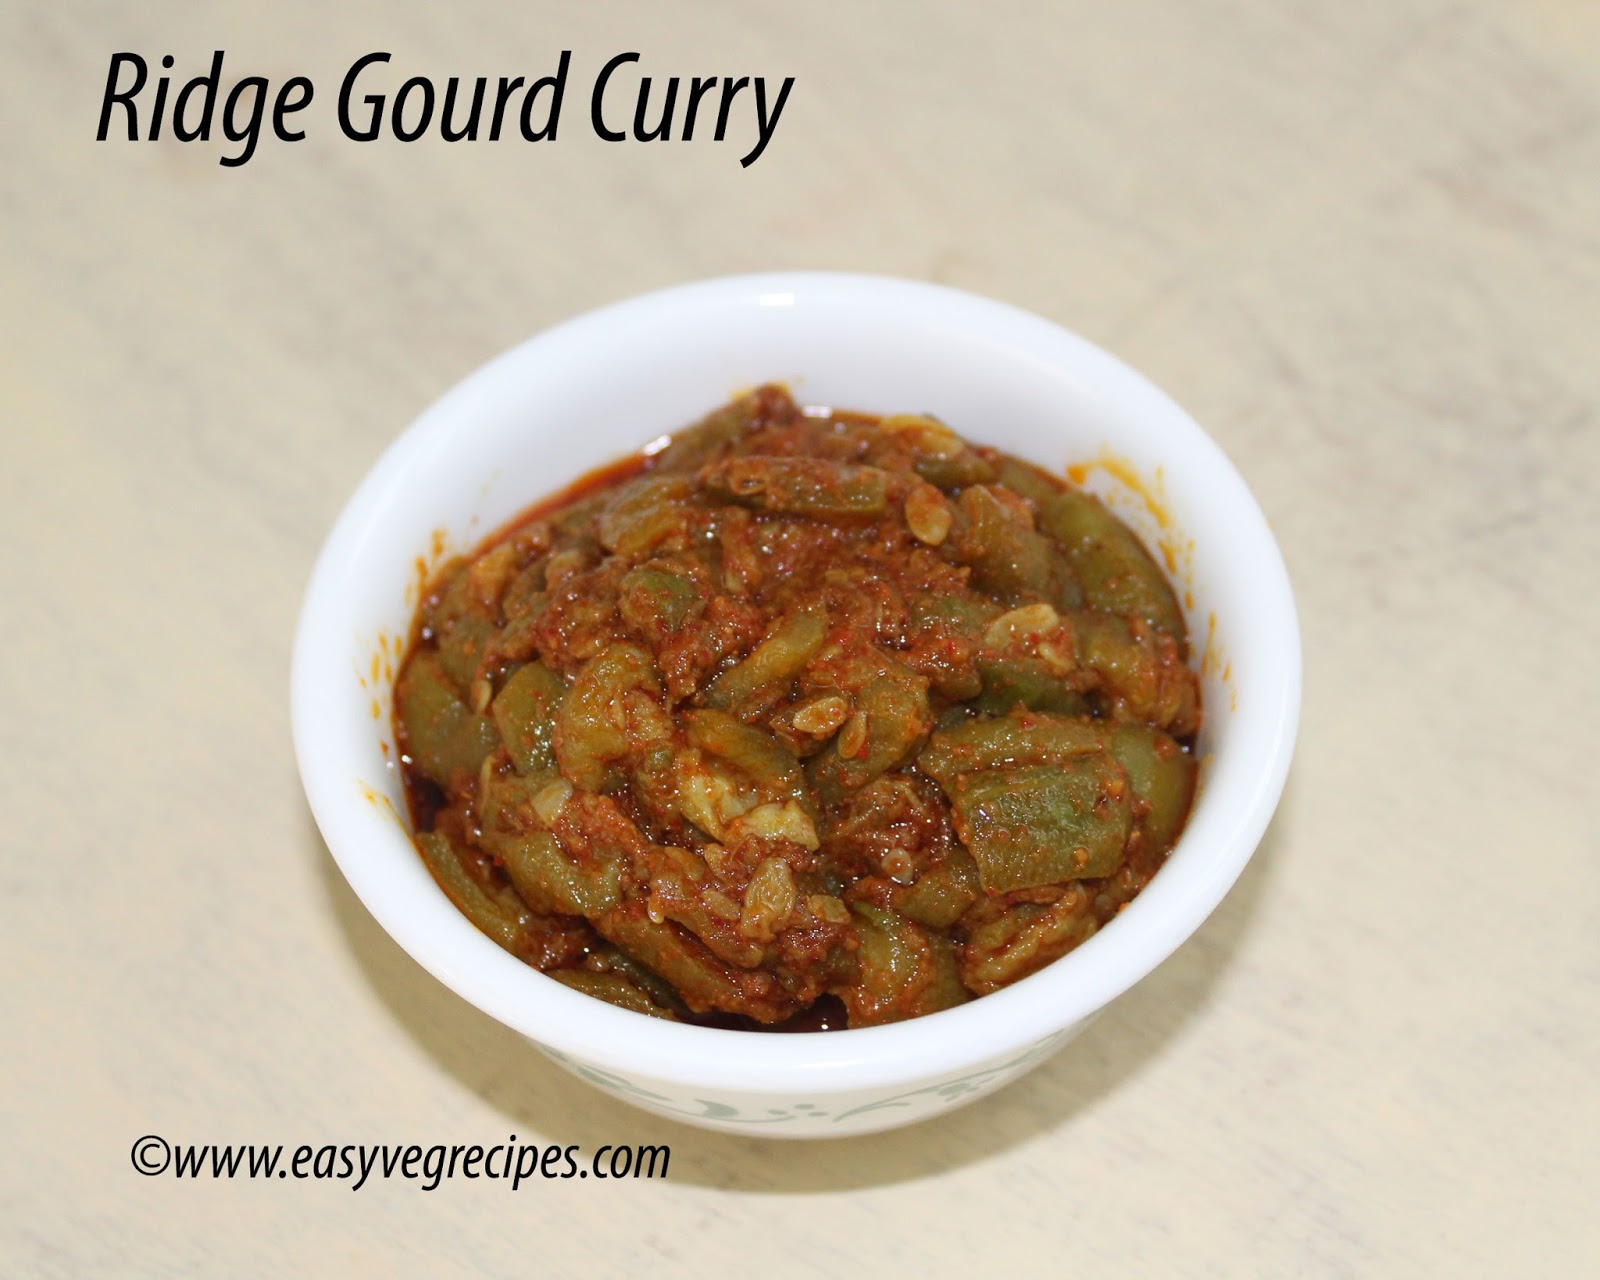 Ridge Gourd Curry